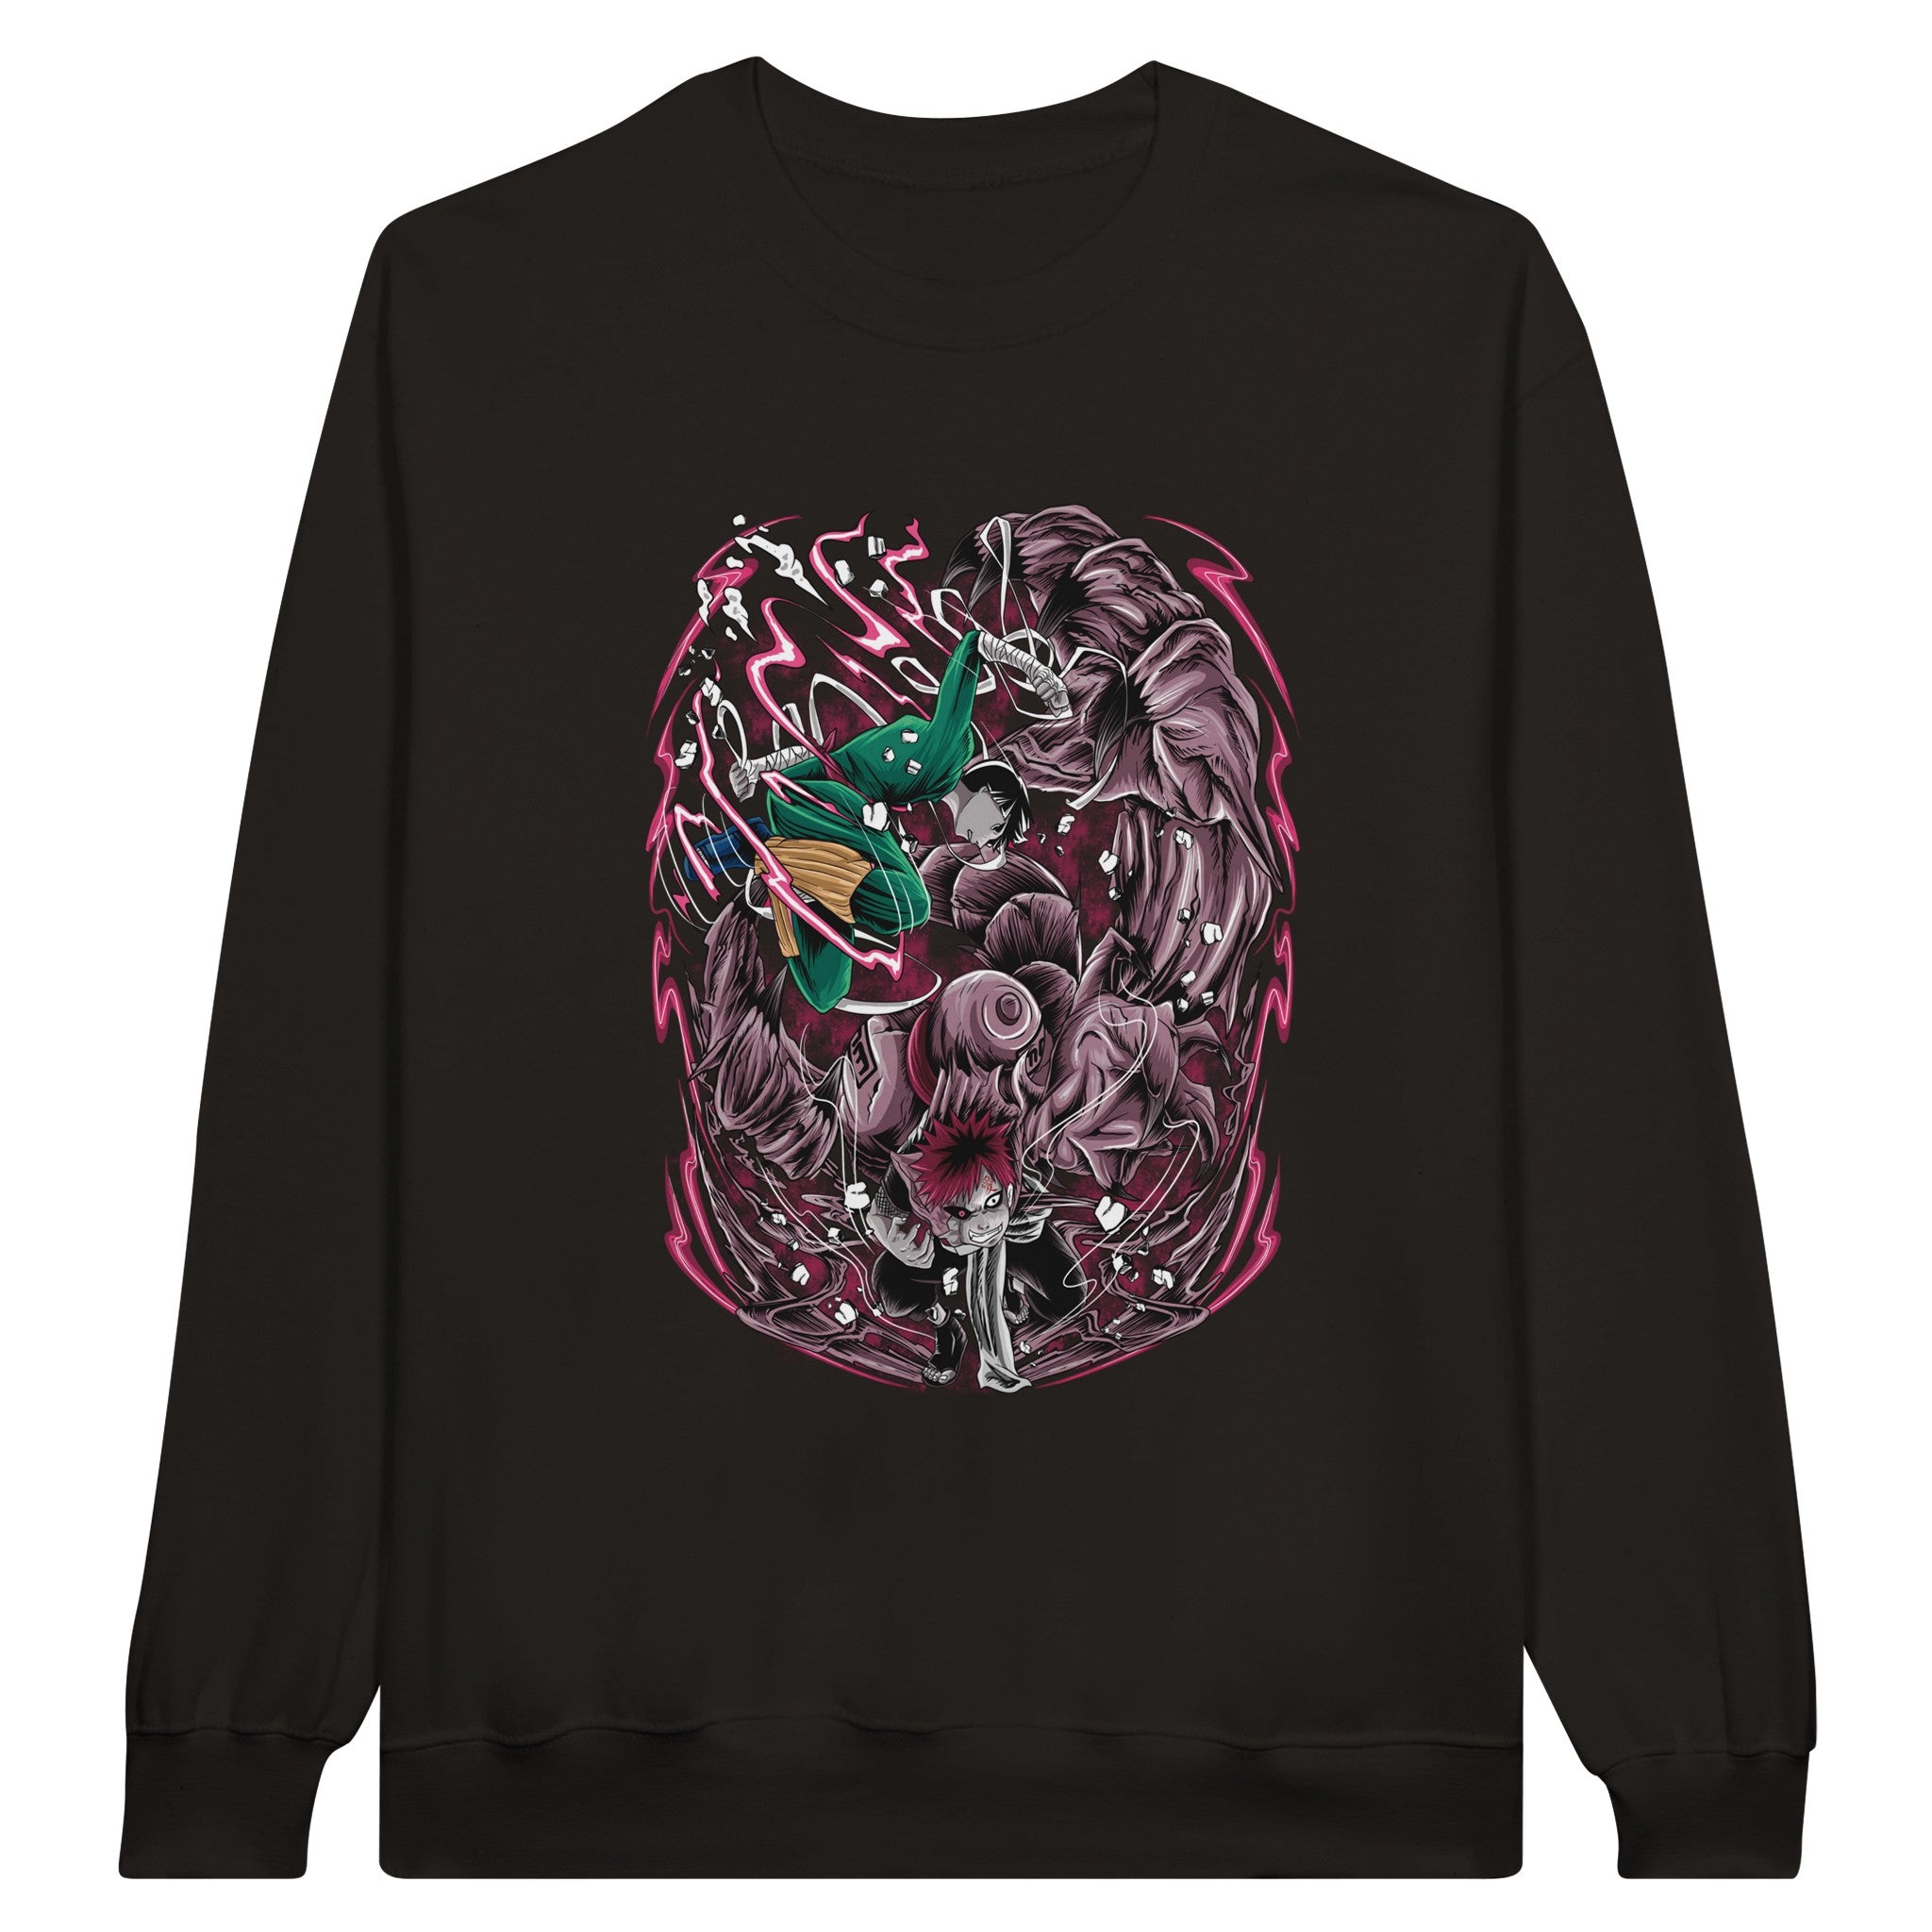 shop and buy naruto anime clothing gaara vs rock lee sweatshirt/jumper/longsleeve